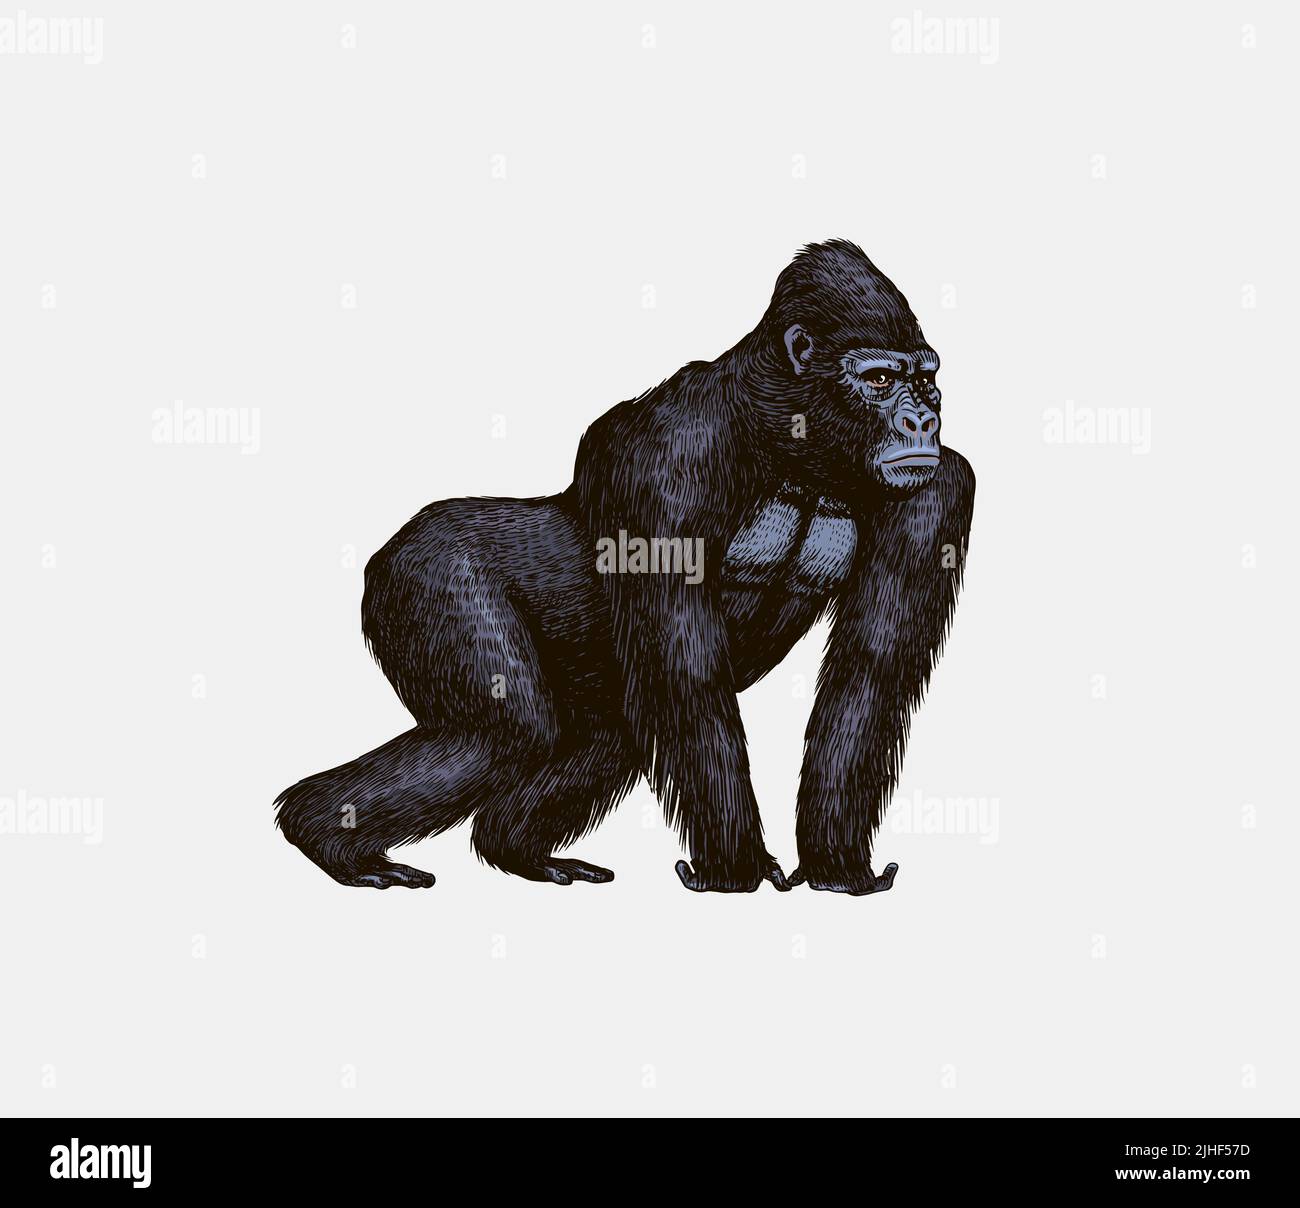 Le gorille de l'Ouest est rampant dans un style vintage. Singe géant. Dessin gravé à la main dans un style de coupe de bois. Illustration de Vecteur